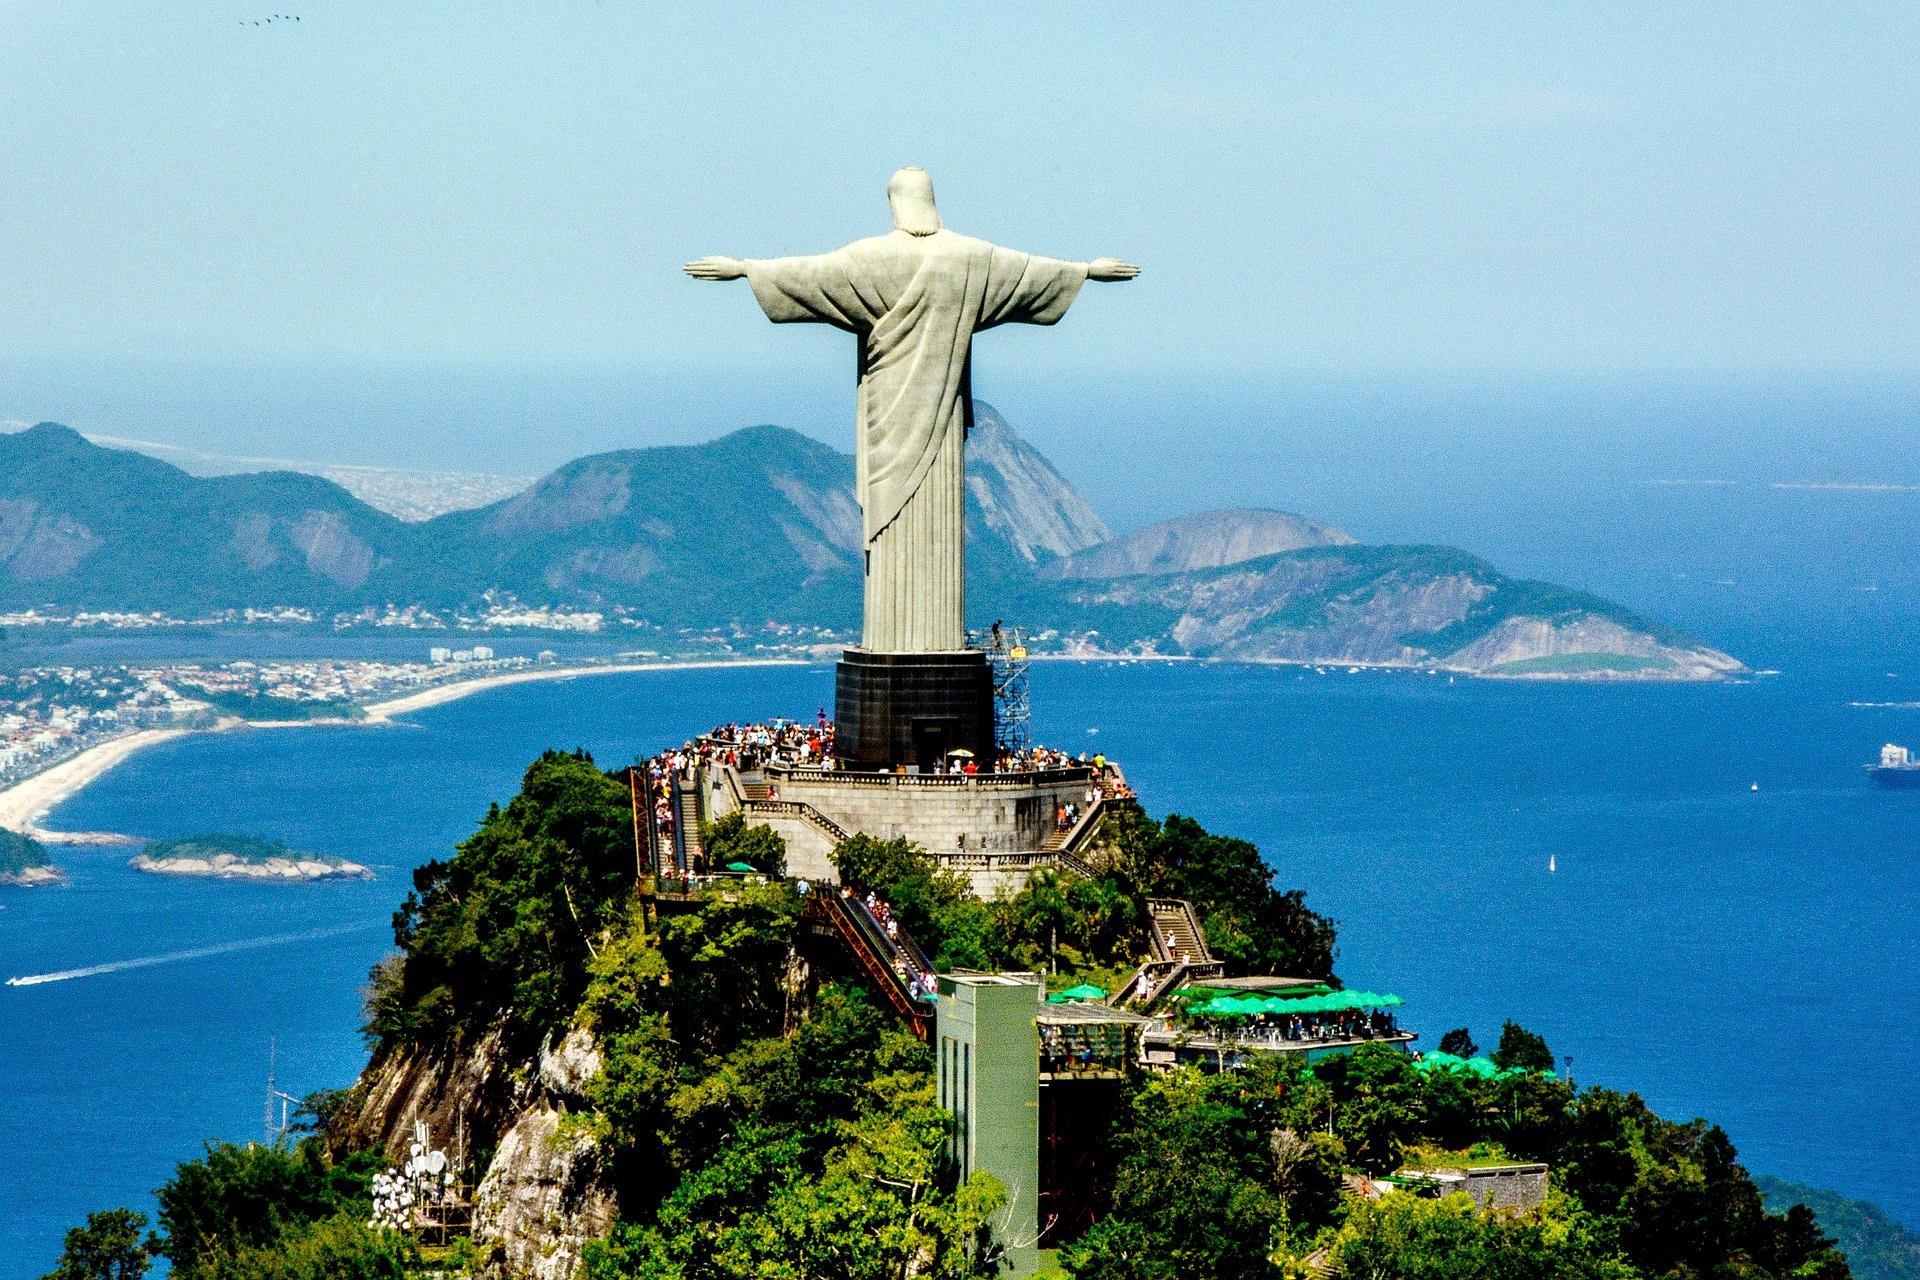 Rio de Janeiro: Corcovado Hill: the statue of Christ above the city.